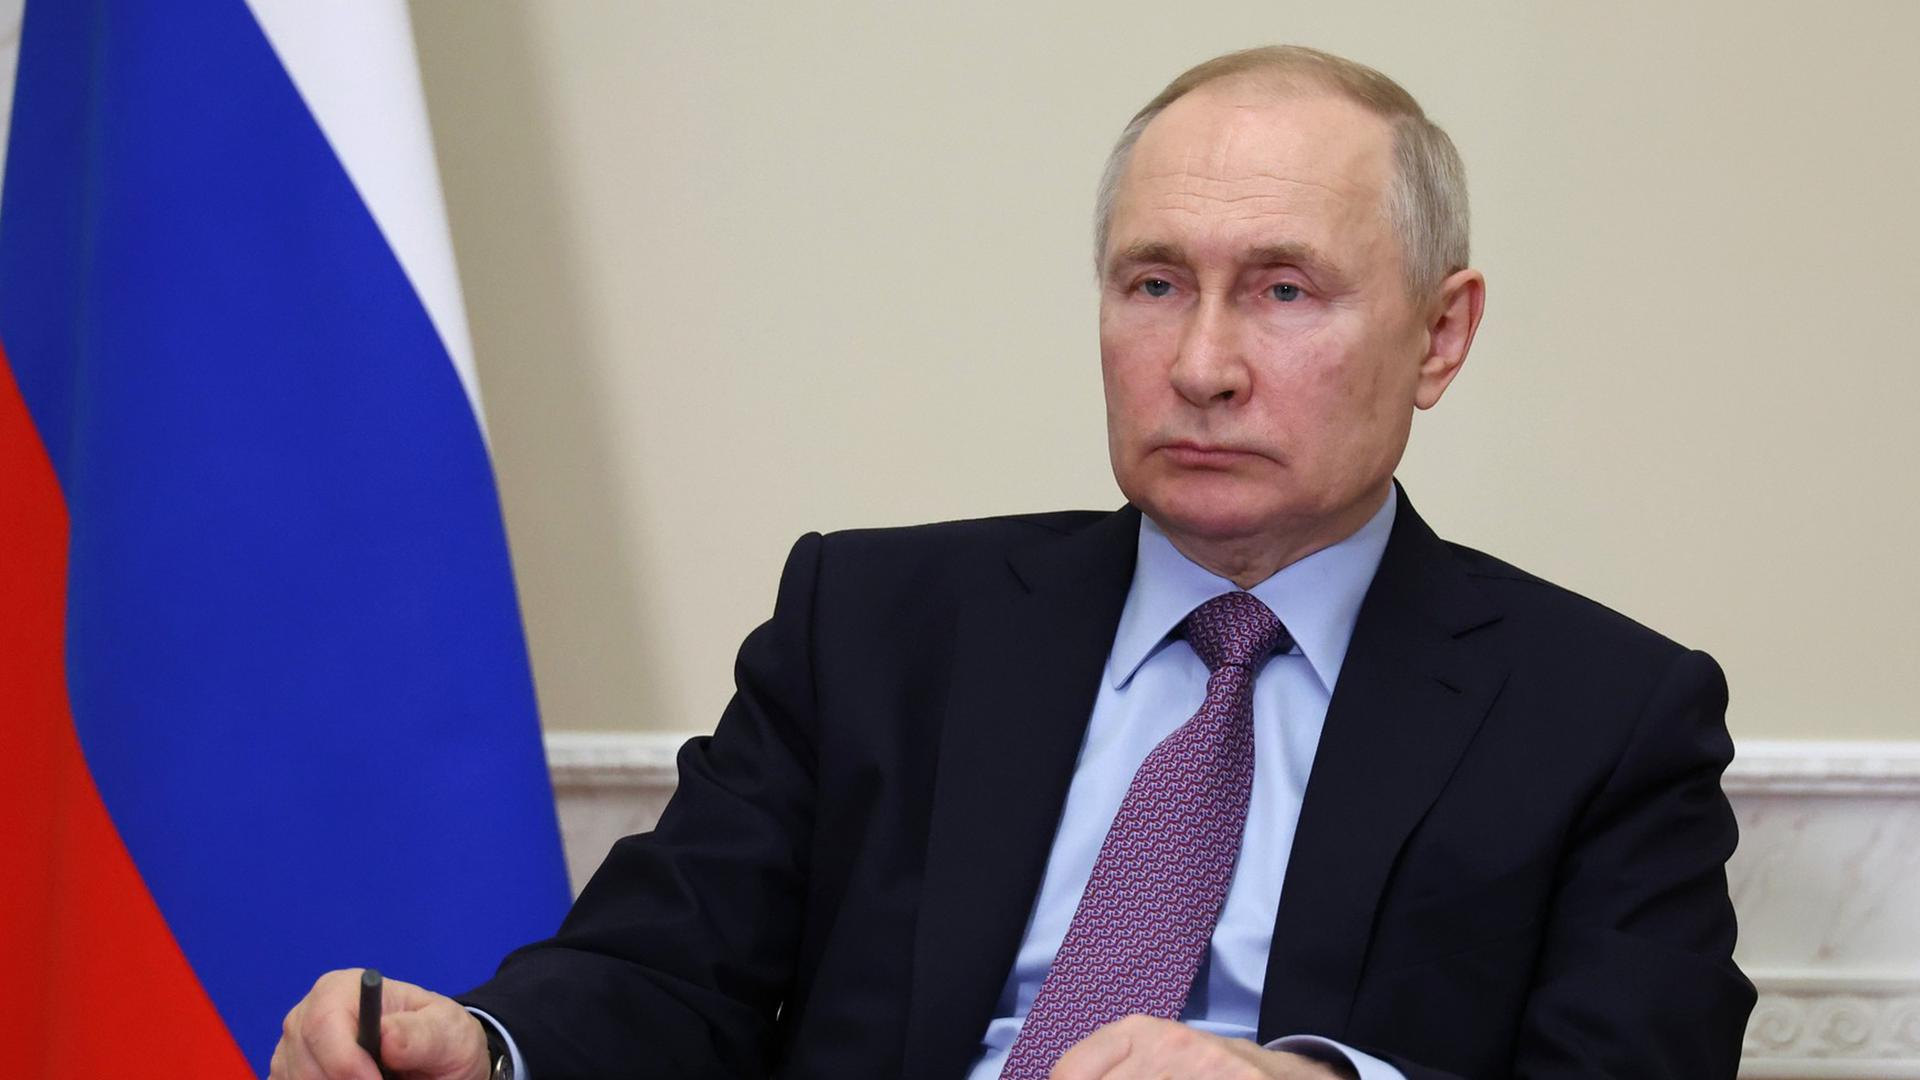 Wladimir Putin sitzt mit ernster Mine vor einer russischen Flagge und hat seine Hände auf einen Tisch gelegt.